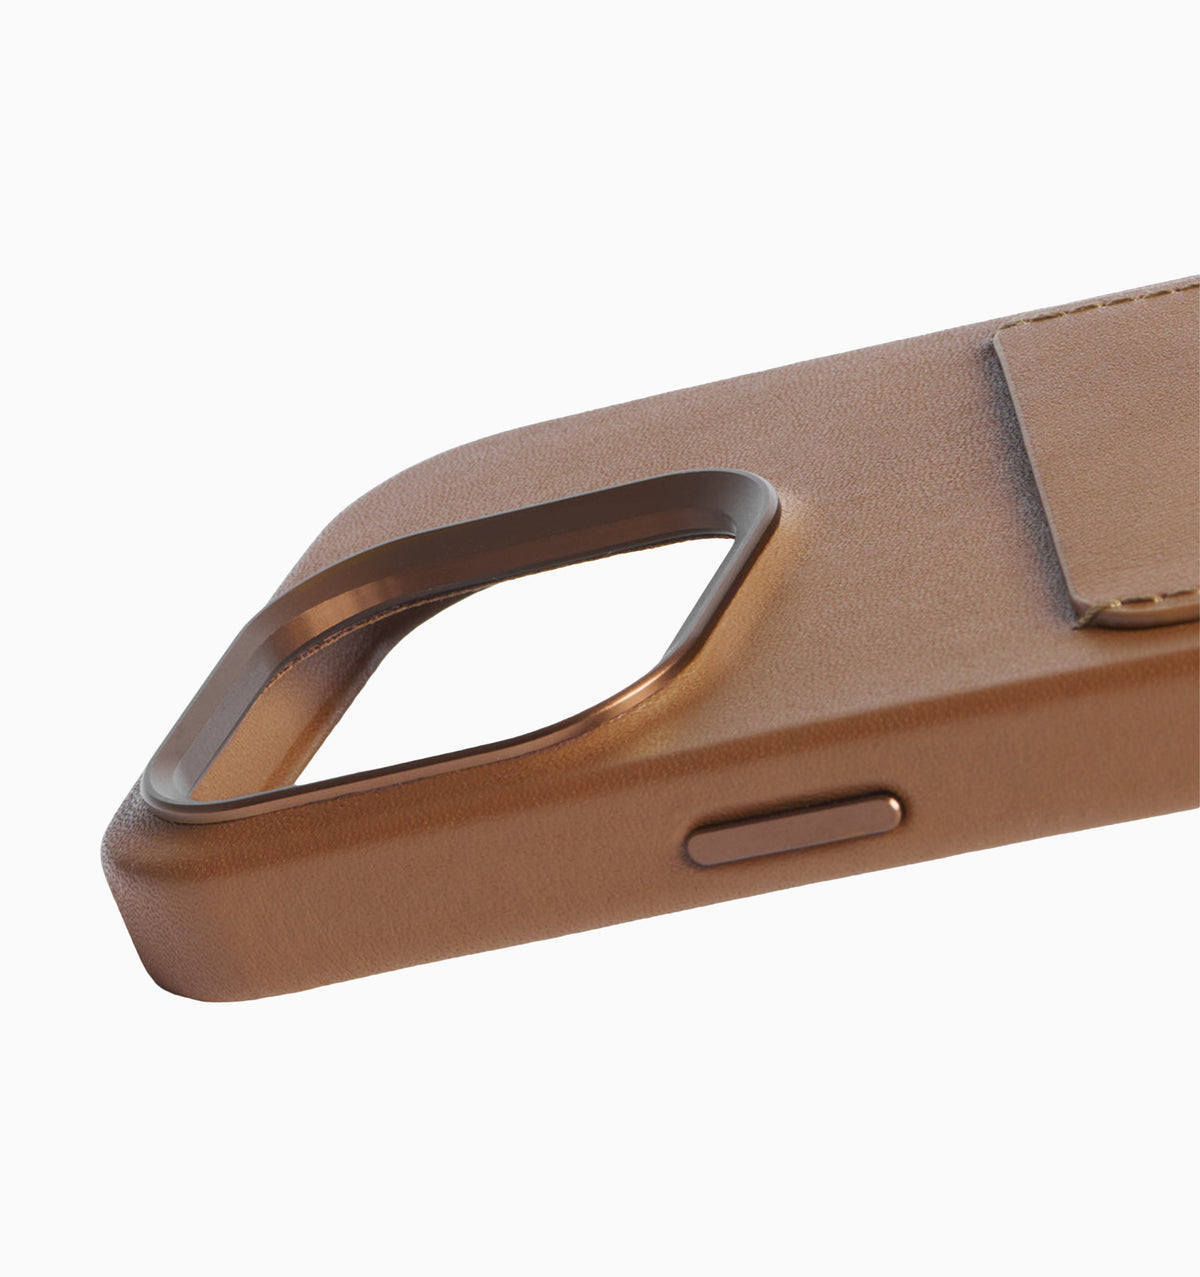 Mujjo Leather Wallet Case - iPhone 15 Pro - Dark Tan